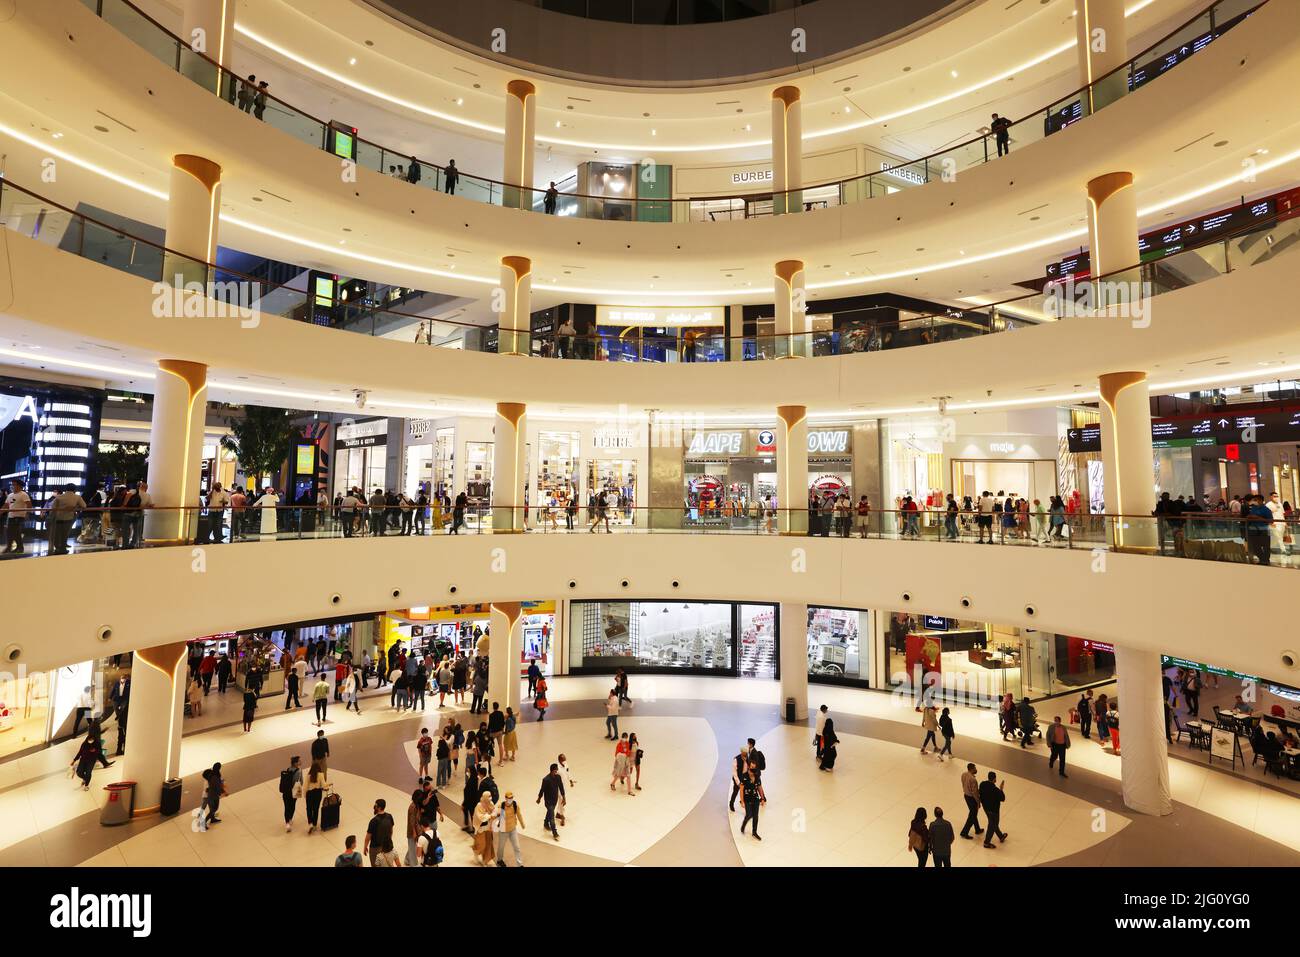 Shopping,, Dubai Mall, Mode, atemberaubend,  Einkaufszentrum, umwerfende  Architektur u. Luxus,  Fashion Geschäften mit Spaß und Freude beim Shoppen Stock Photo